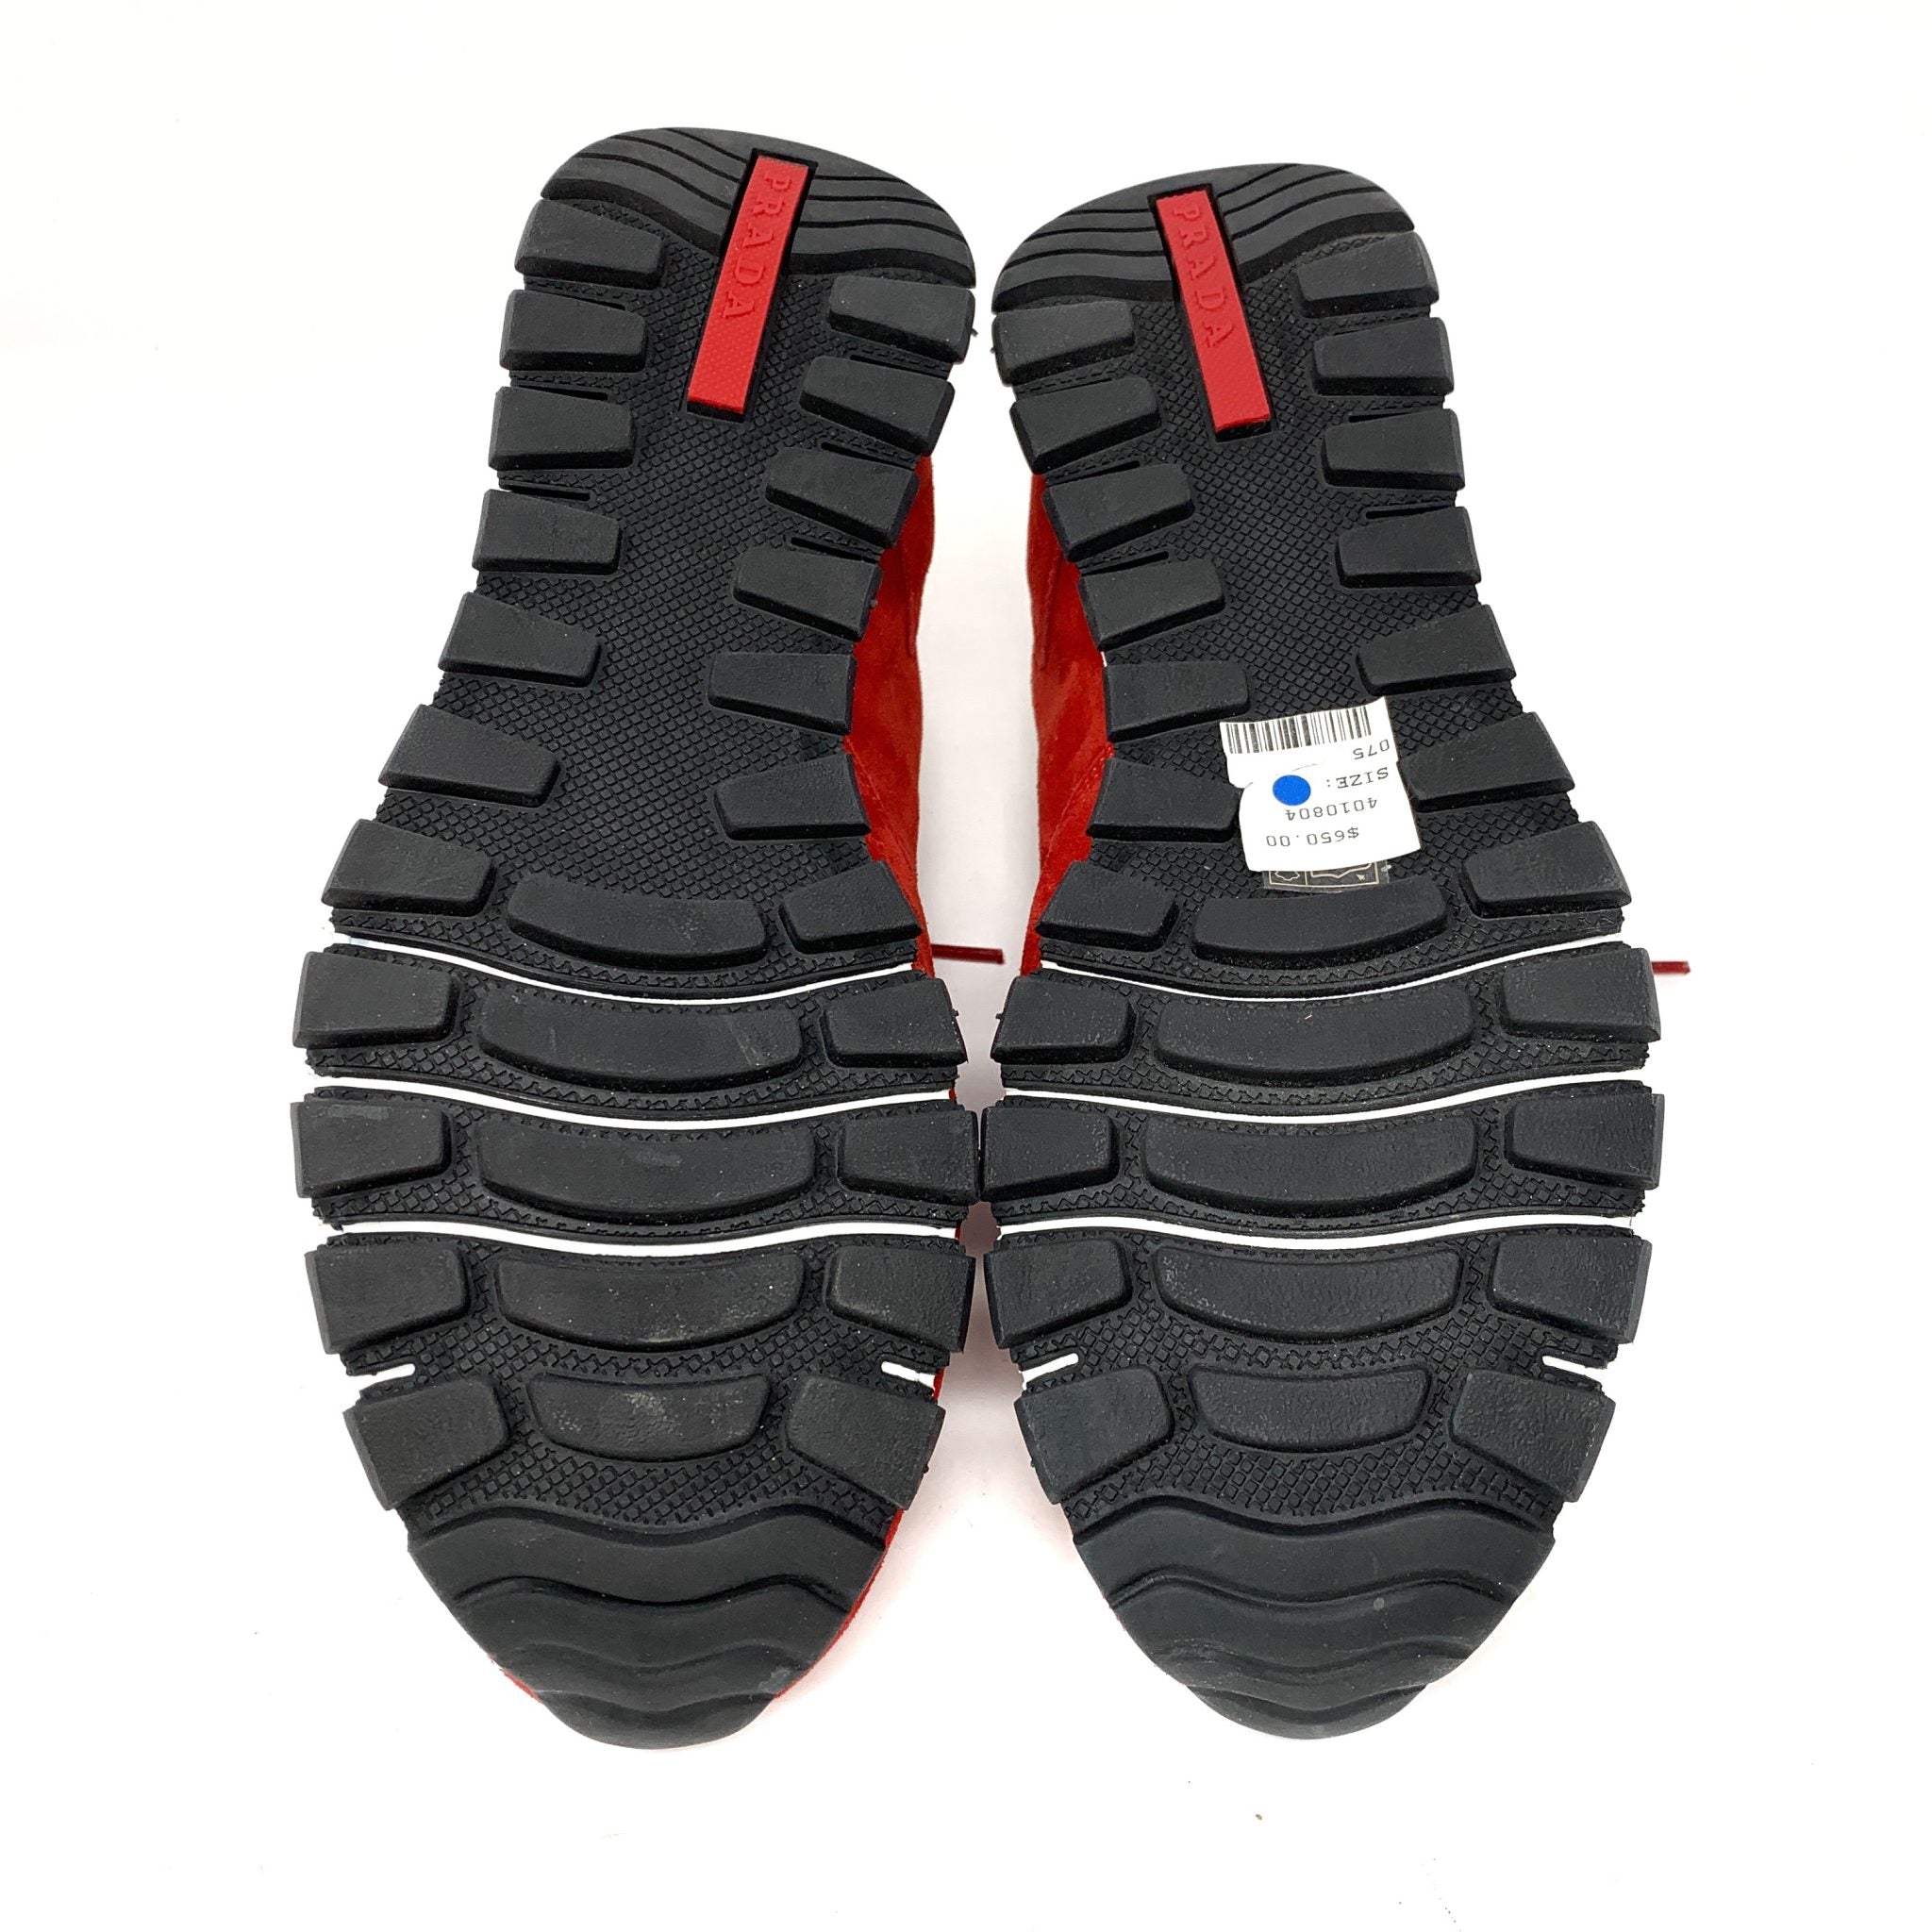 Prada Red Suede Sneakers 7.5